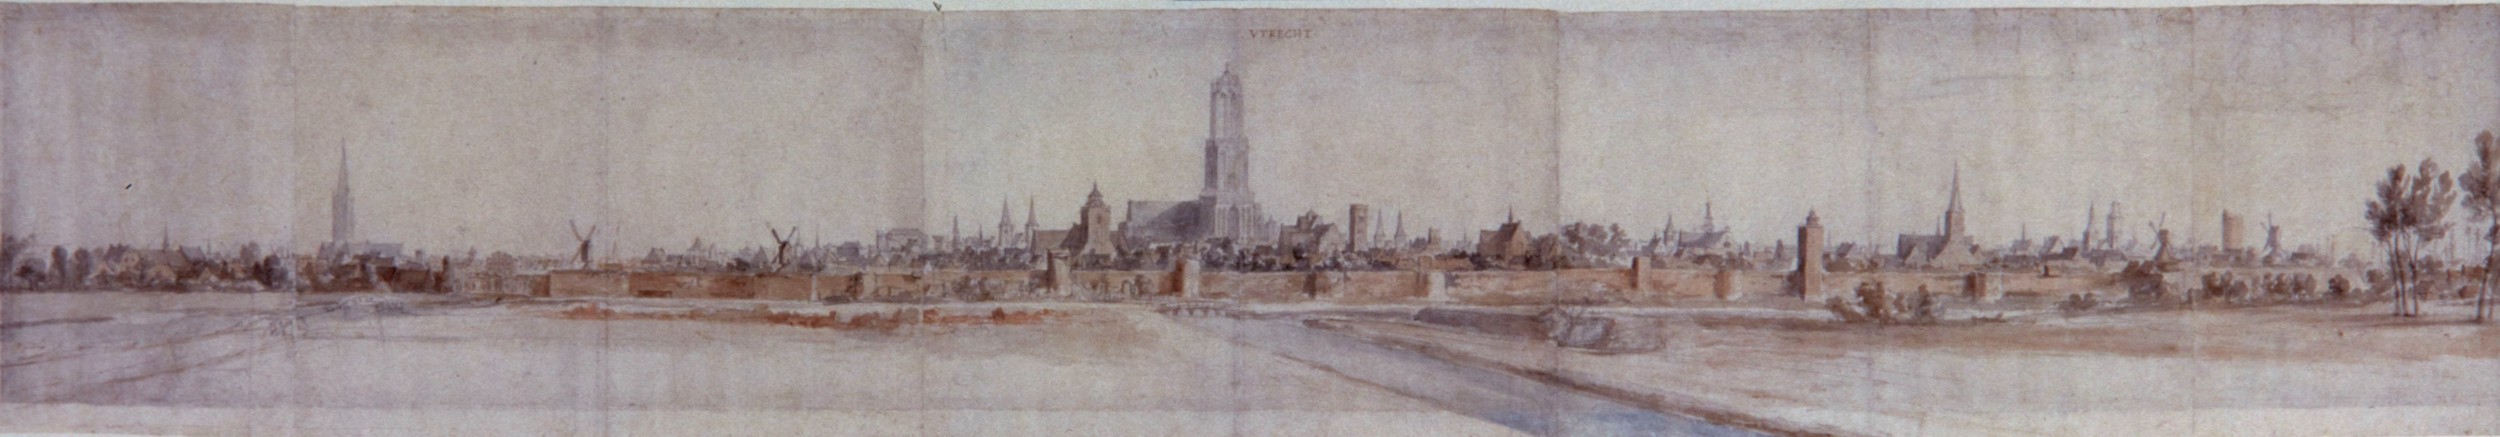 Profiel van Utrecht vanuit het westen AF van der Meulen 1672 NO 205 000 17725 Mobilier national